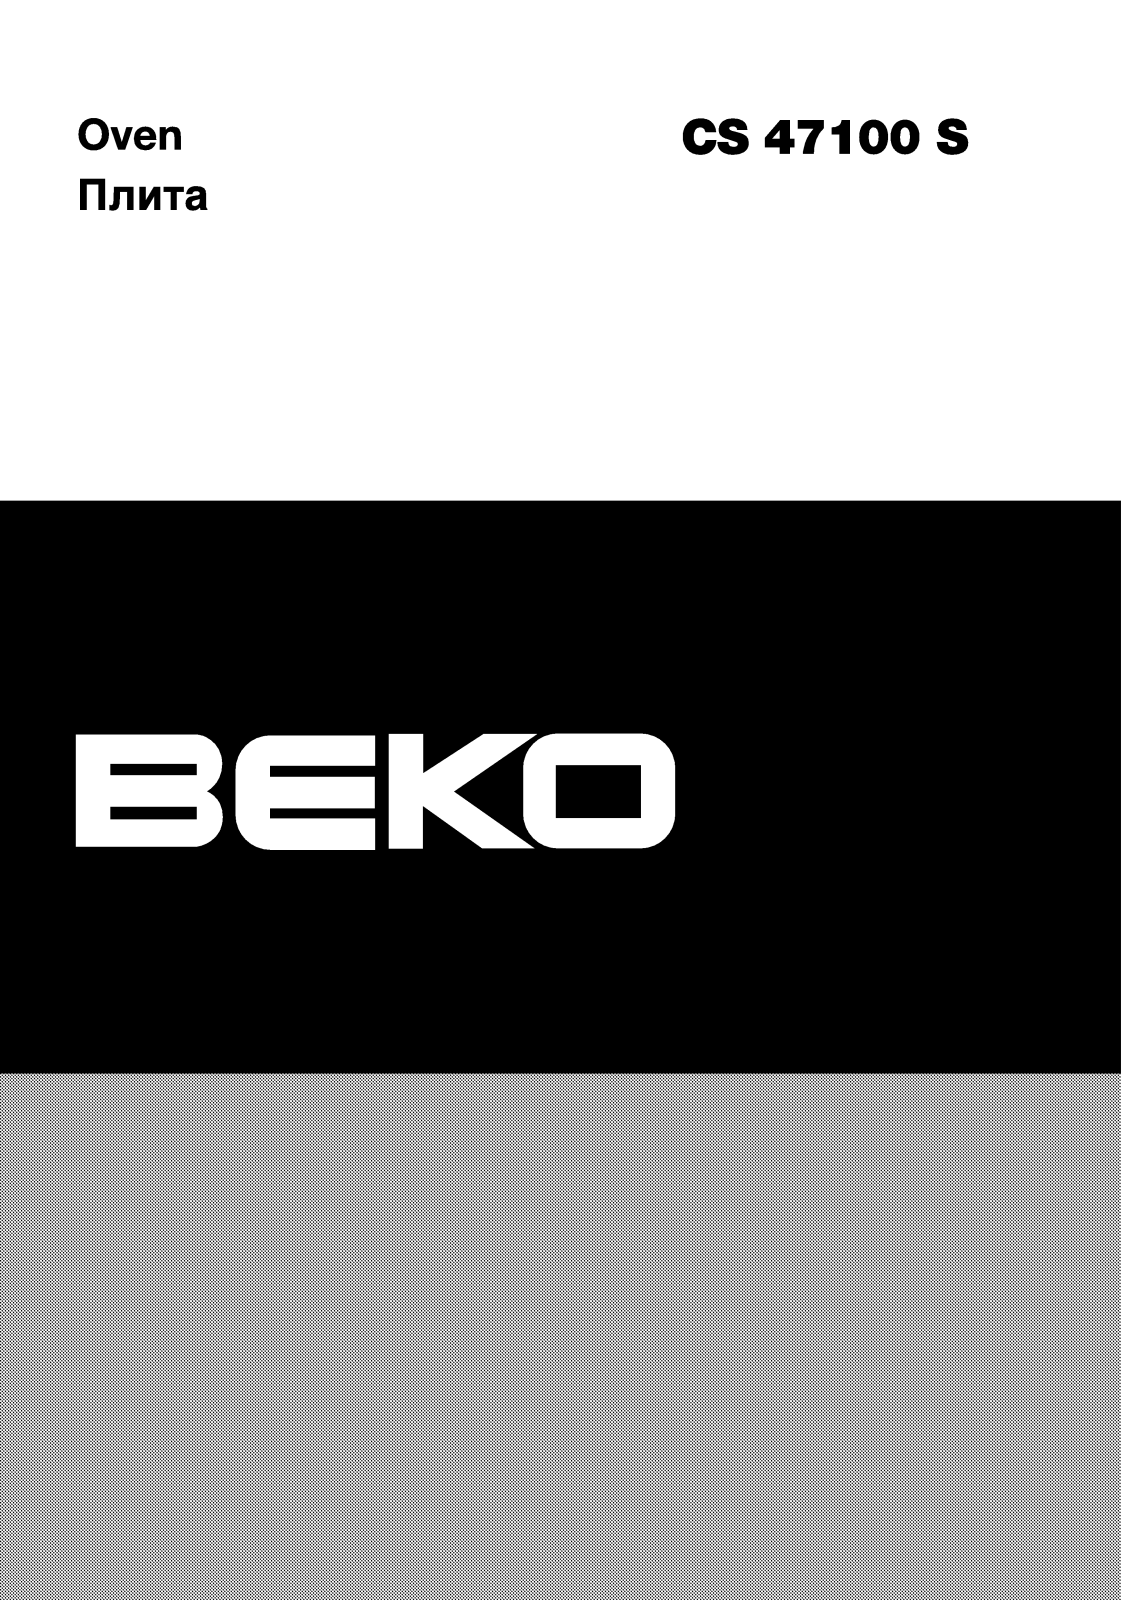 Beko CS 47100 S User Manual